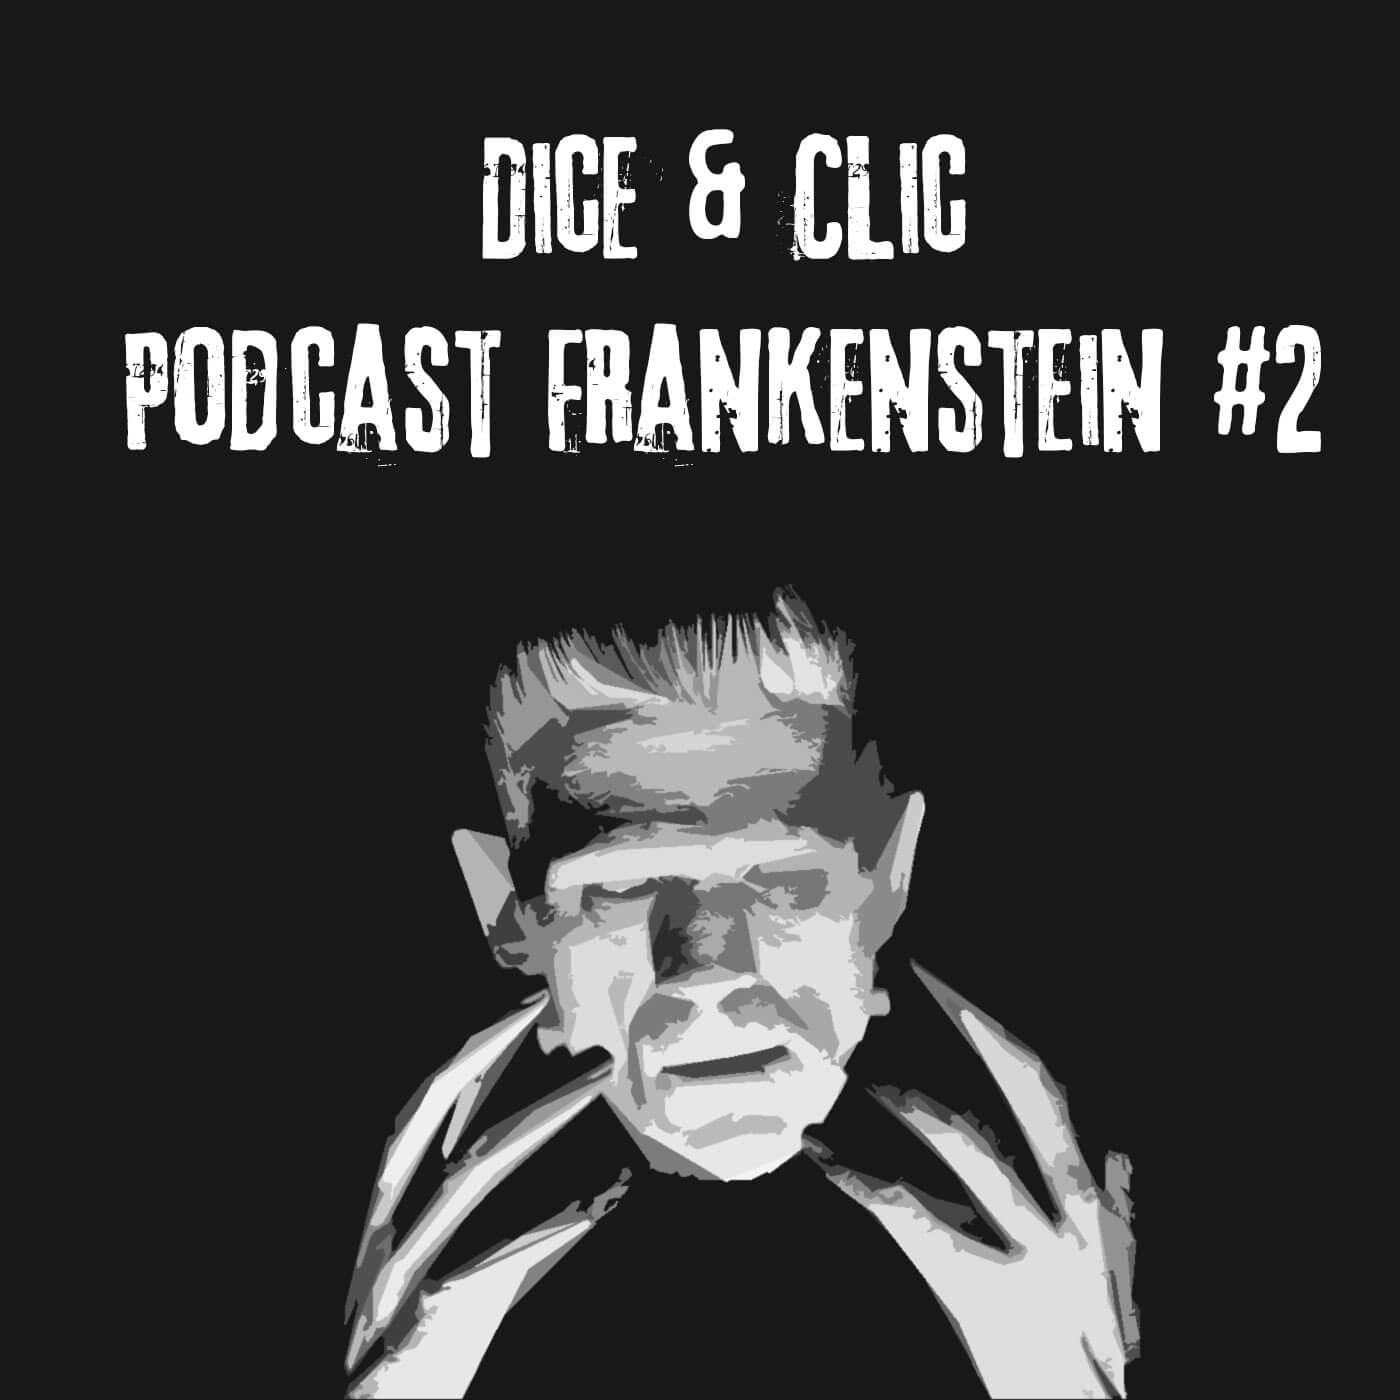 Podcast Frankenstein #2